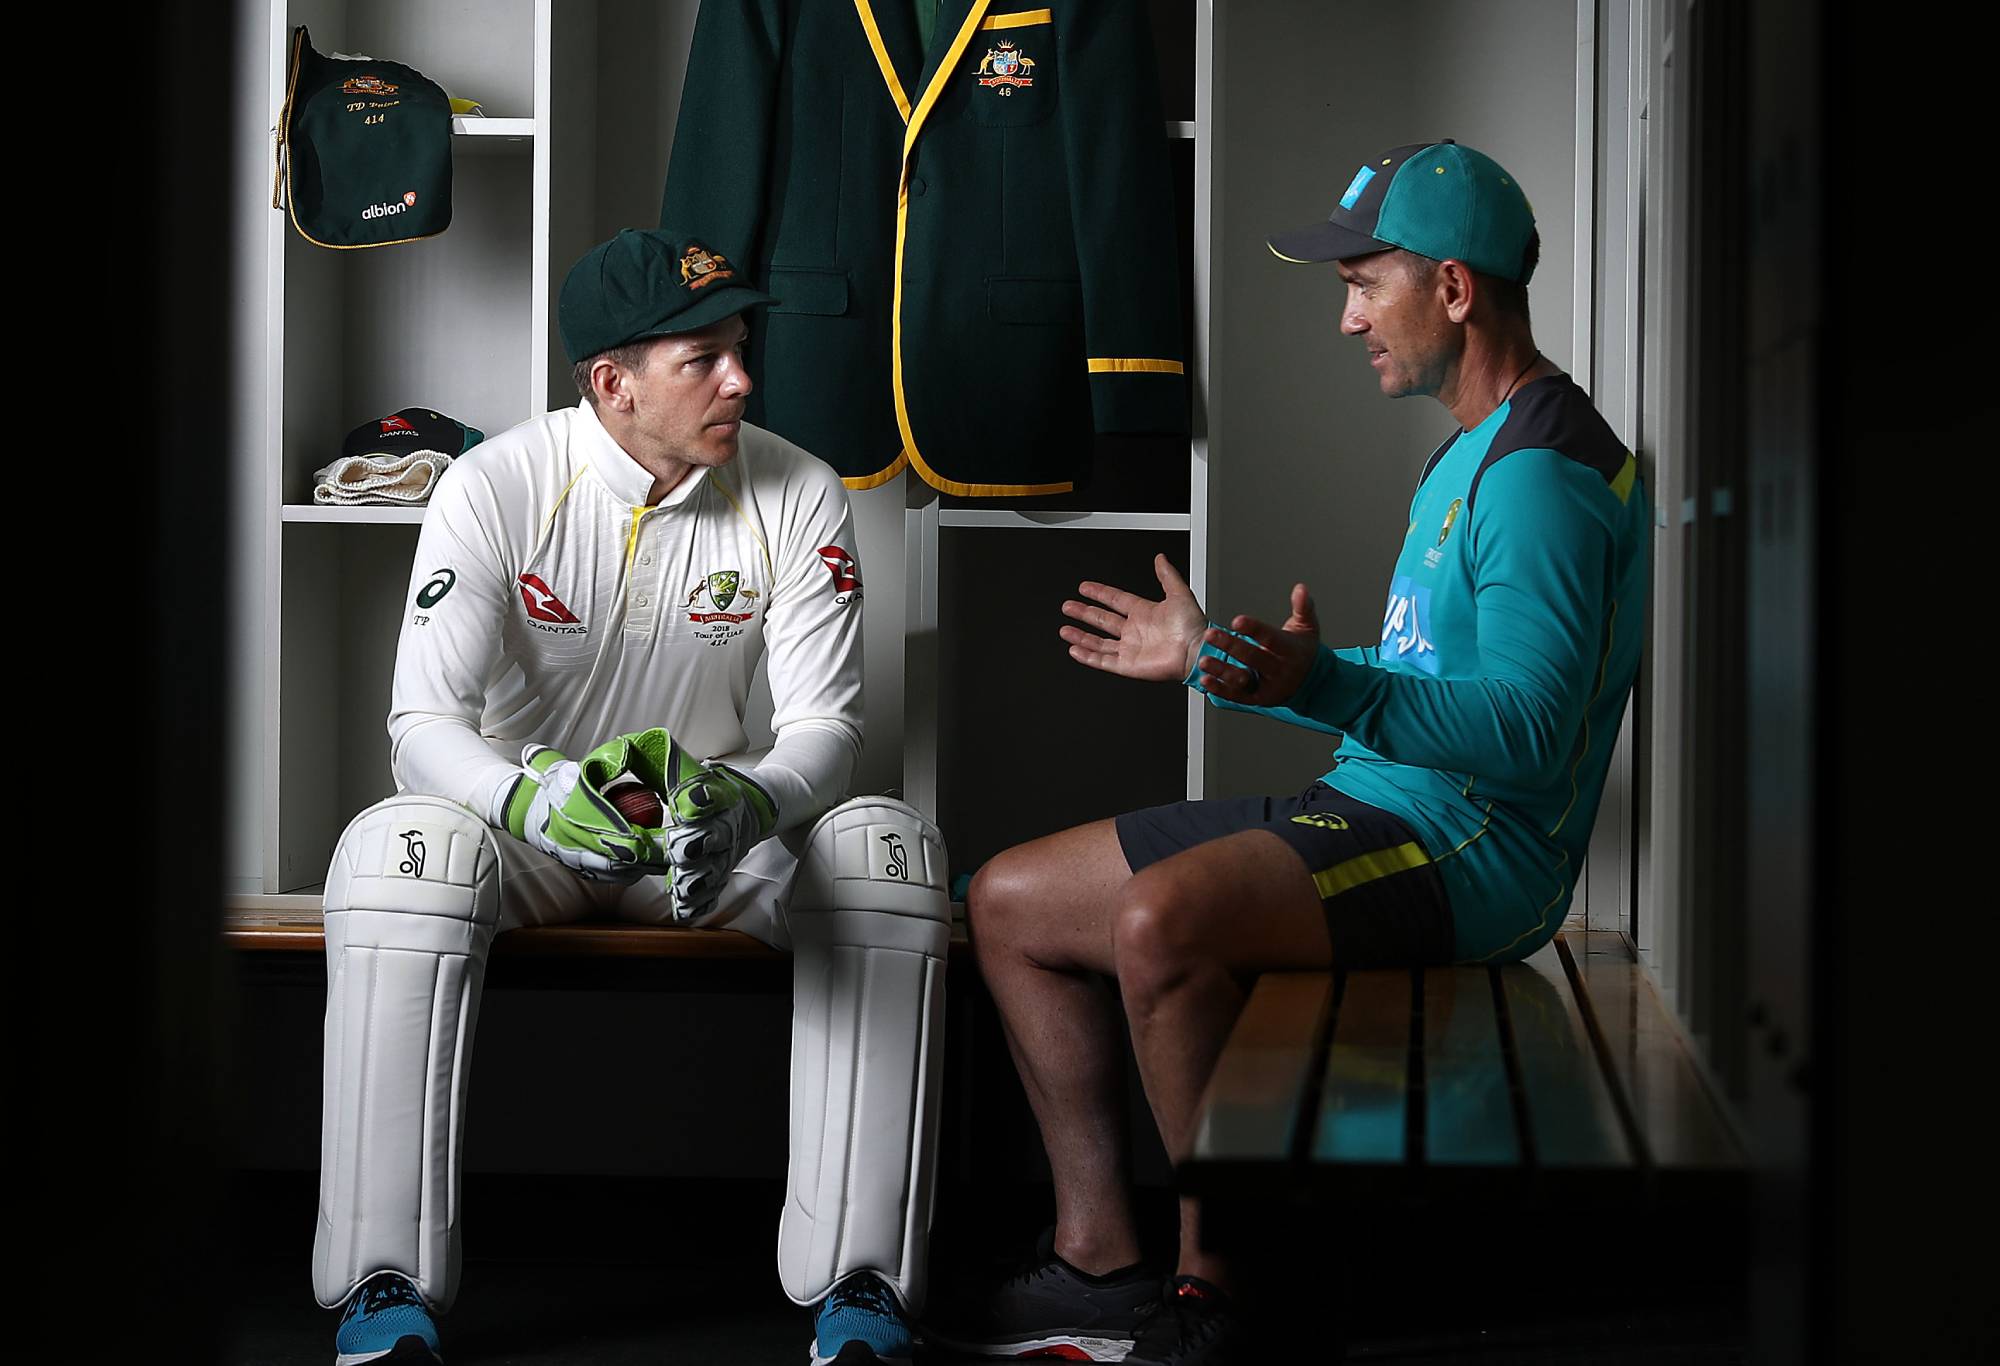 Kapten kriket Tes Australia Tim Paine dan Justin Langer, pelatih Australia, berpose selama sesi potret di ICC Academy pada 05 Oktober 2018 di Dubai, Uni Emirat Arab.  (Foto oleh Ryan Pierse/Getty Images)